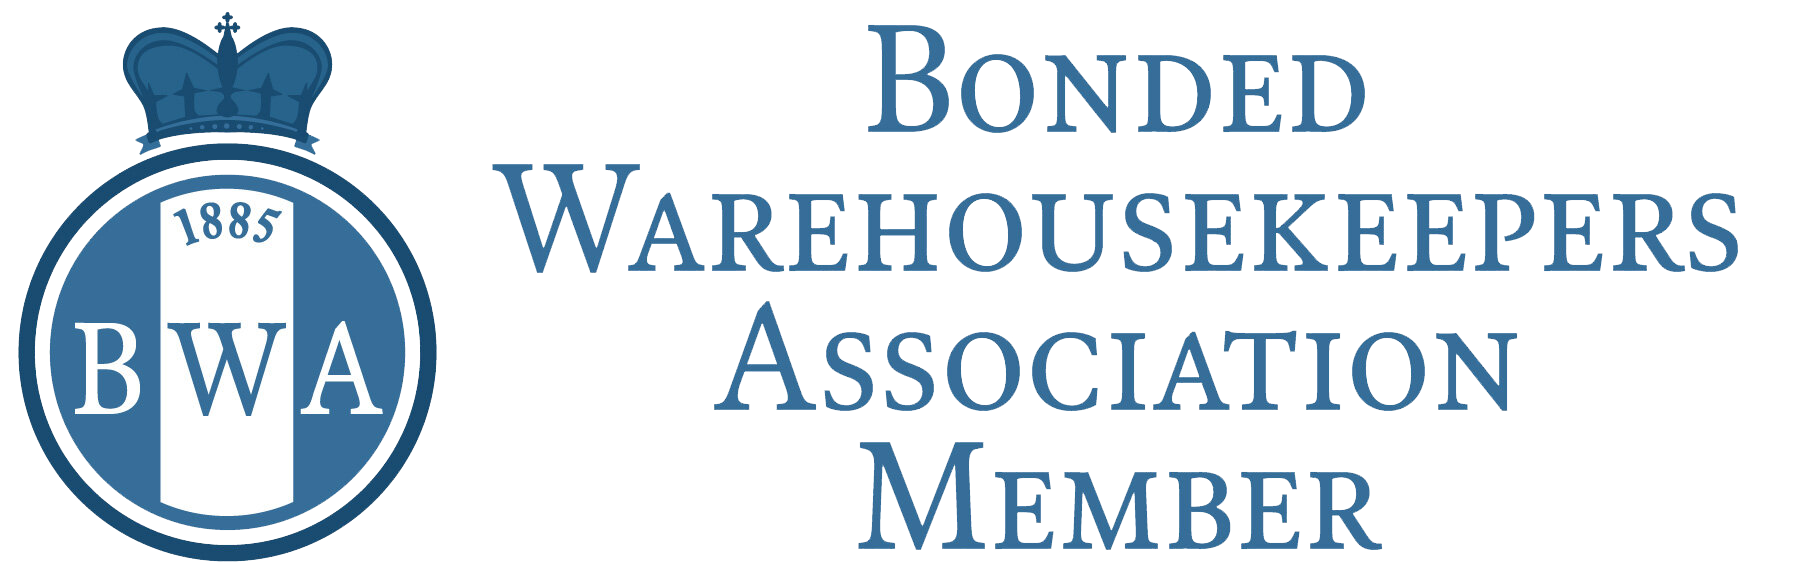 Bonded Warehousekeepers Association Member